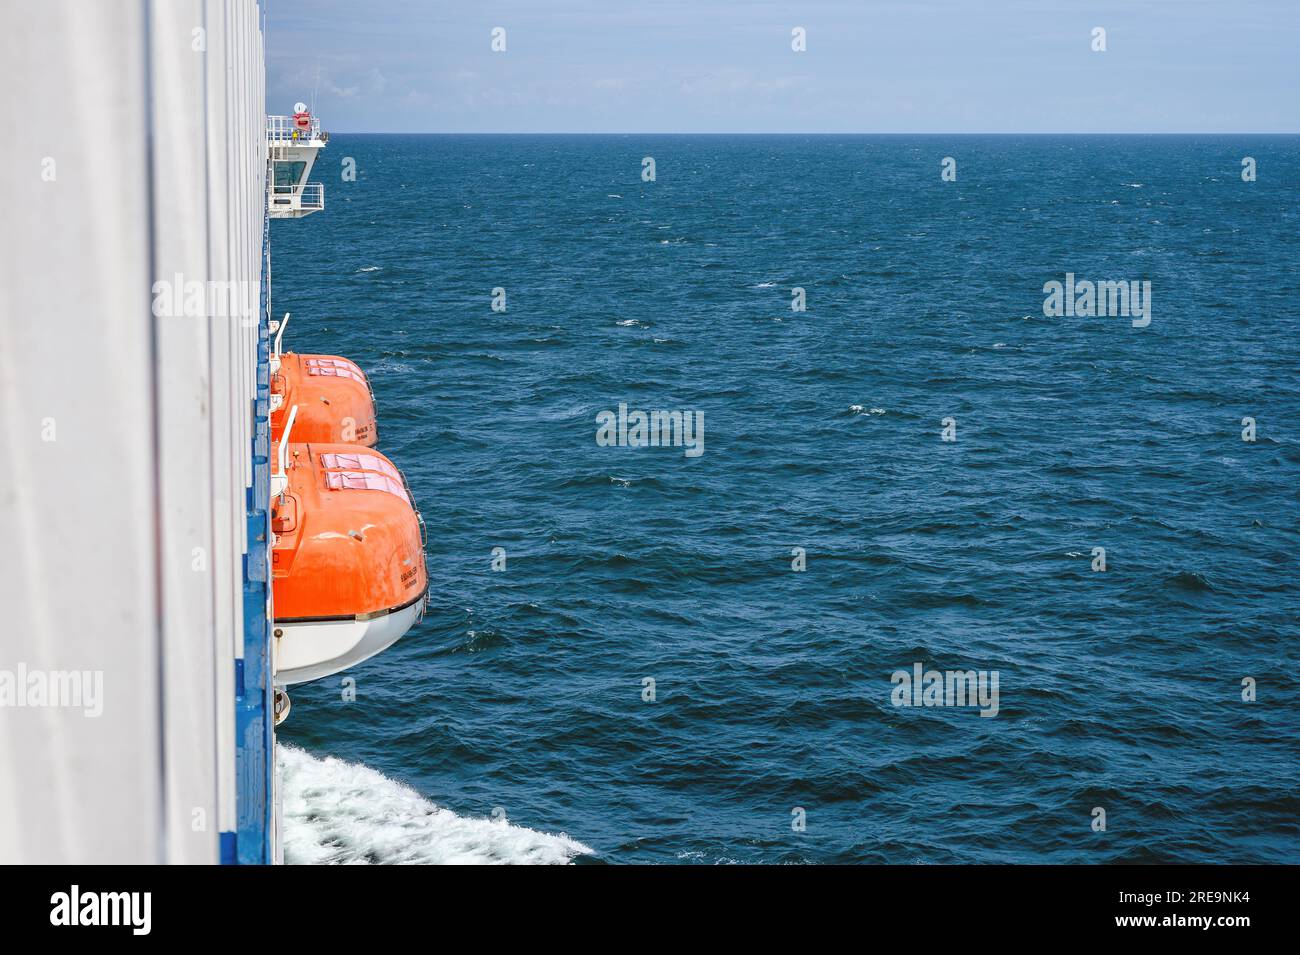 Une vue sur la mer à bord du ferry transmanche Galicia, montrant les canots de sauvetage et le pont. Banque D'Images